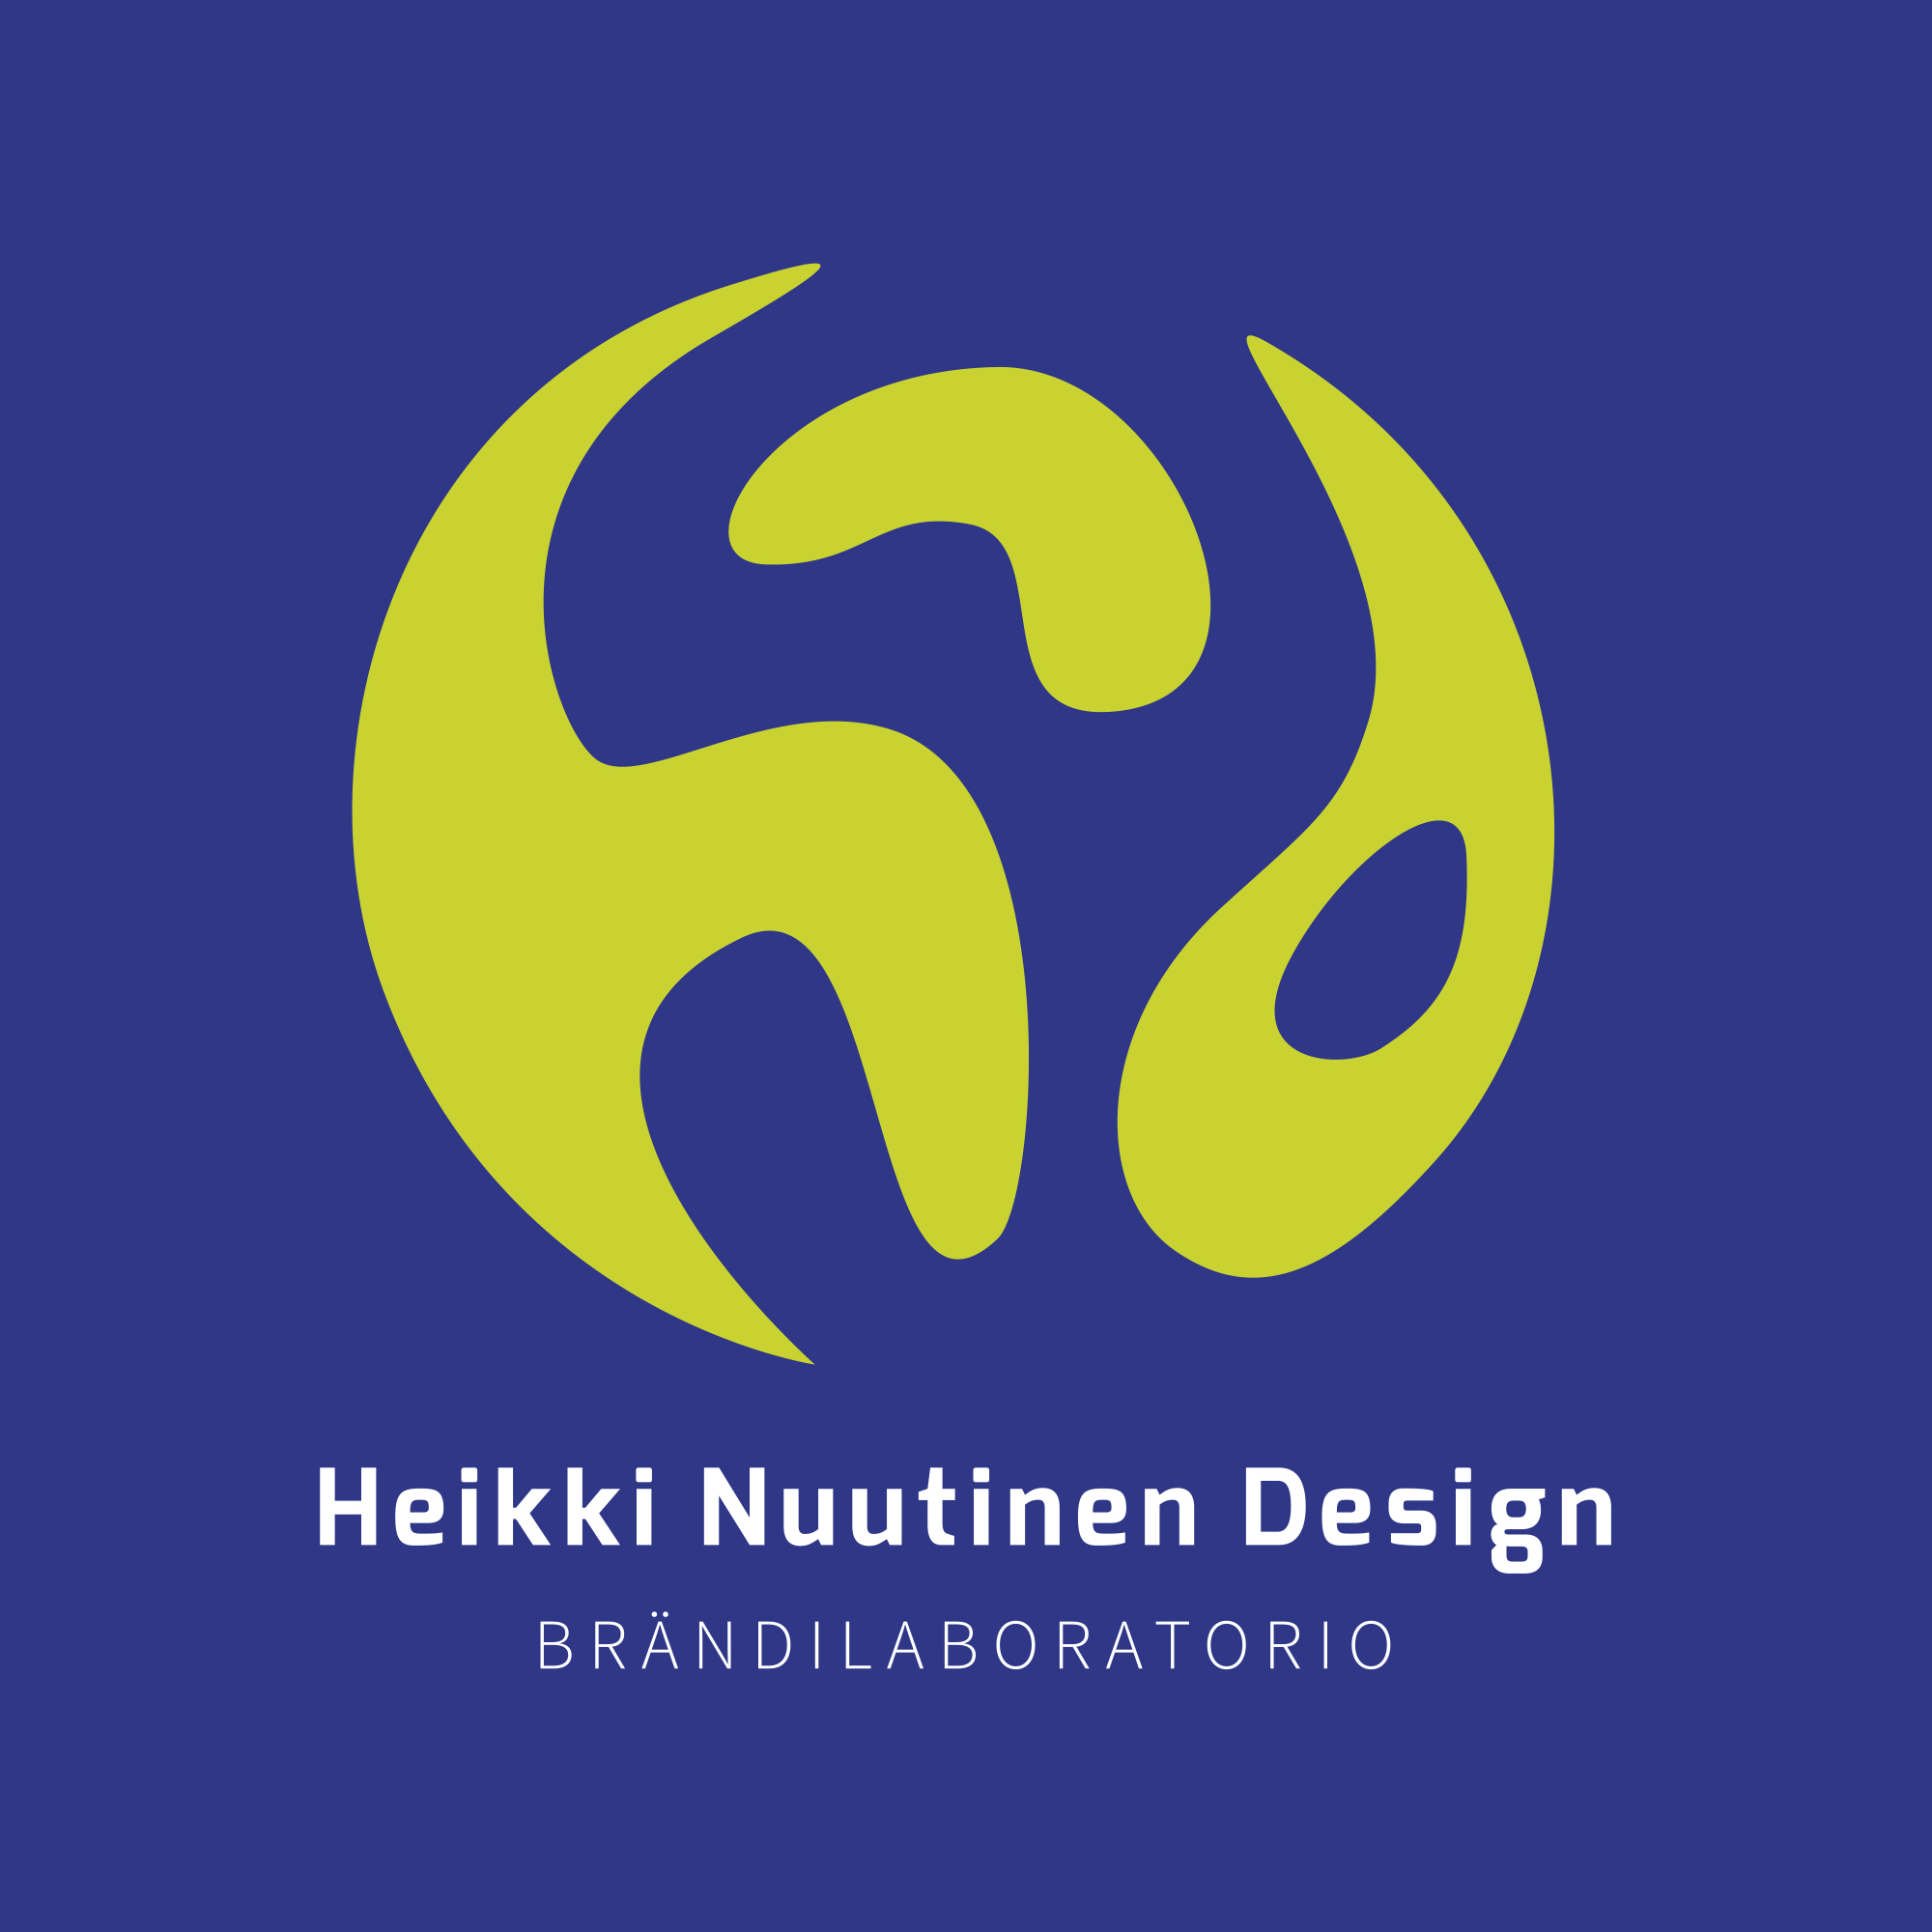 Heikki Nuutinen Design